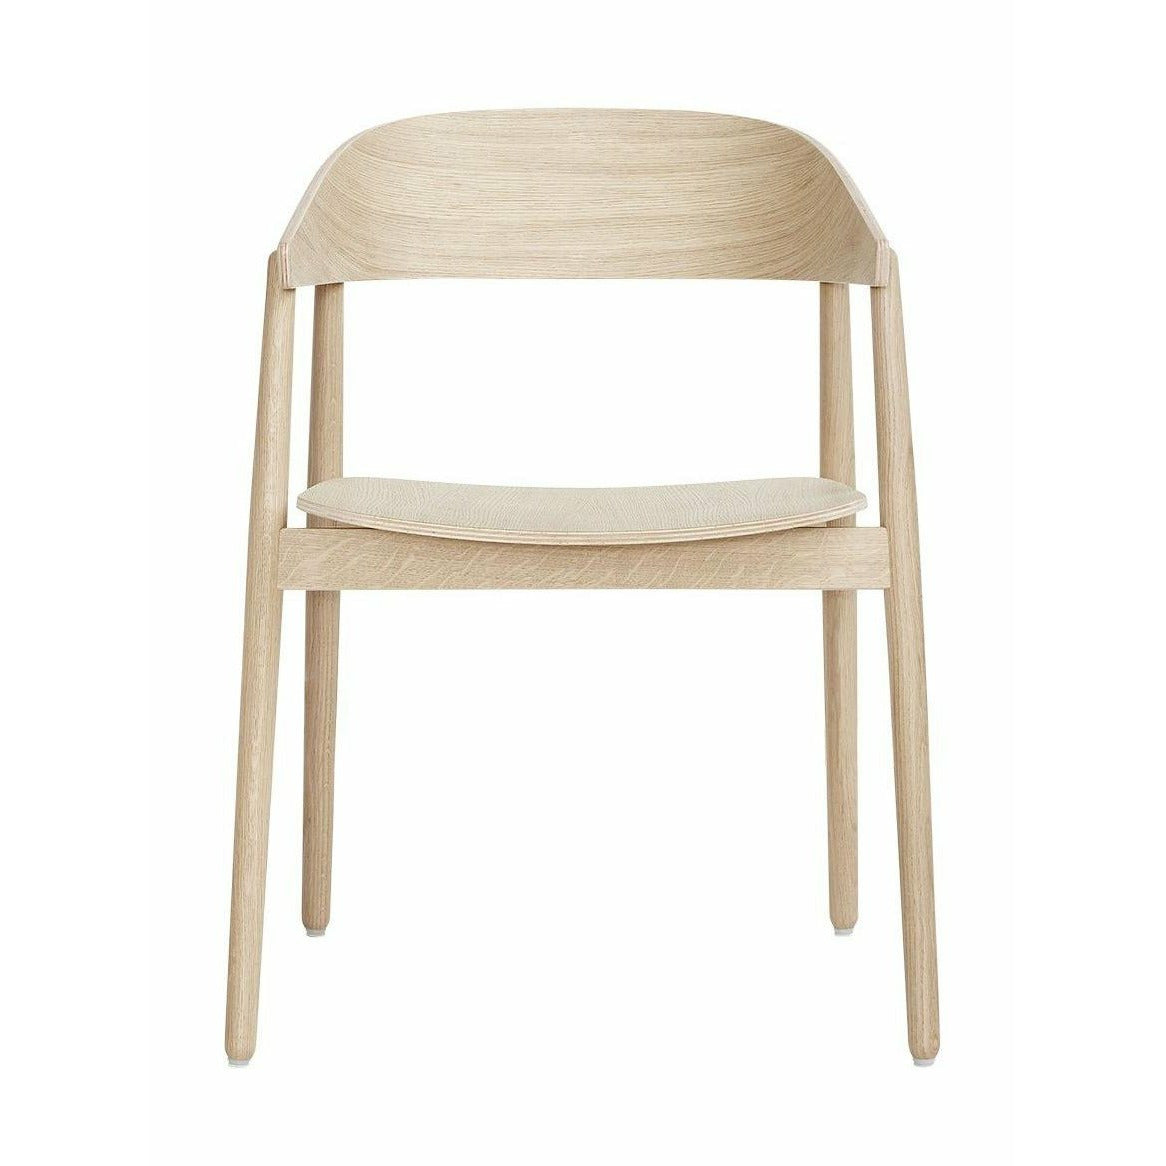 Andersen Furniture Ac2 Stuhl Eiche, weiß pigmentiert lackiert